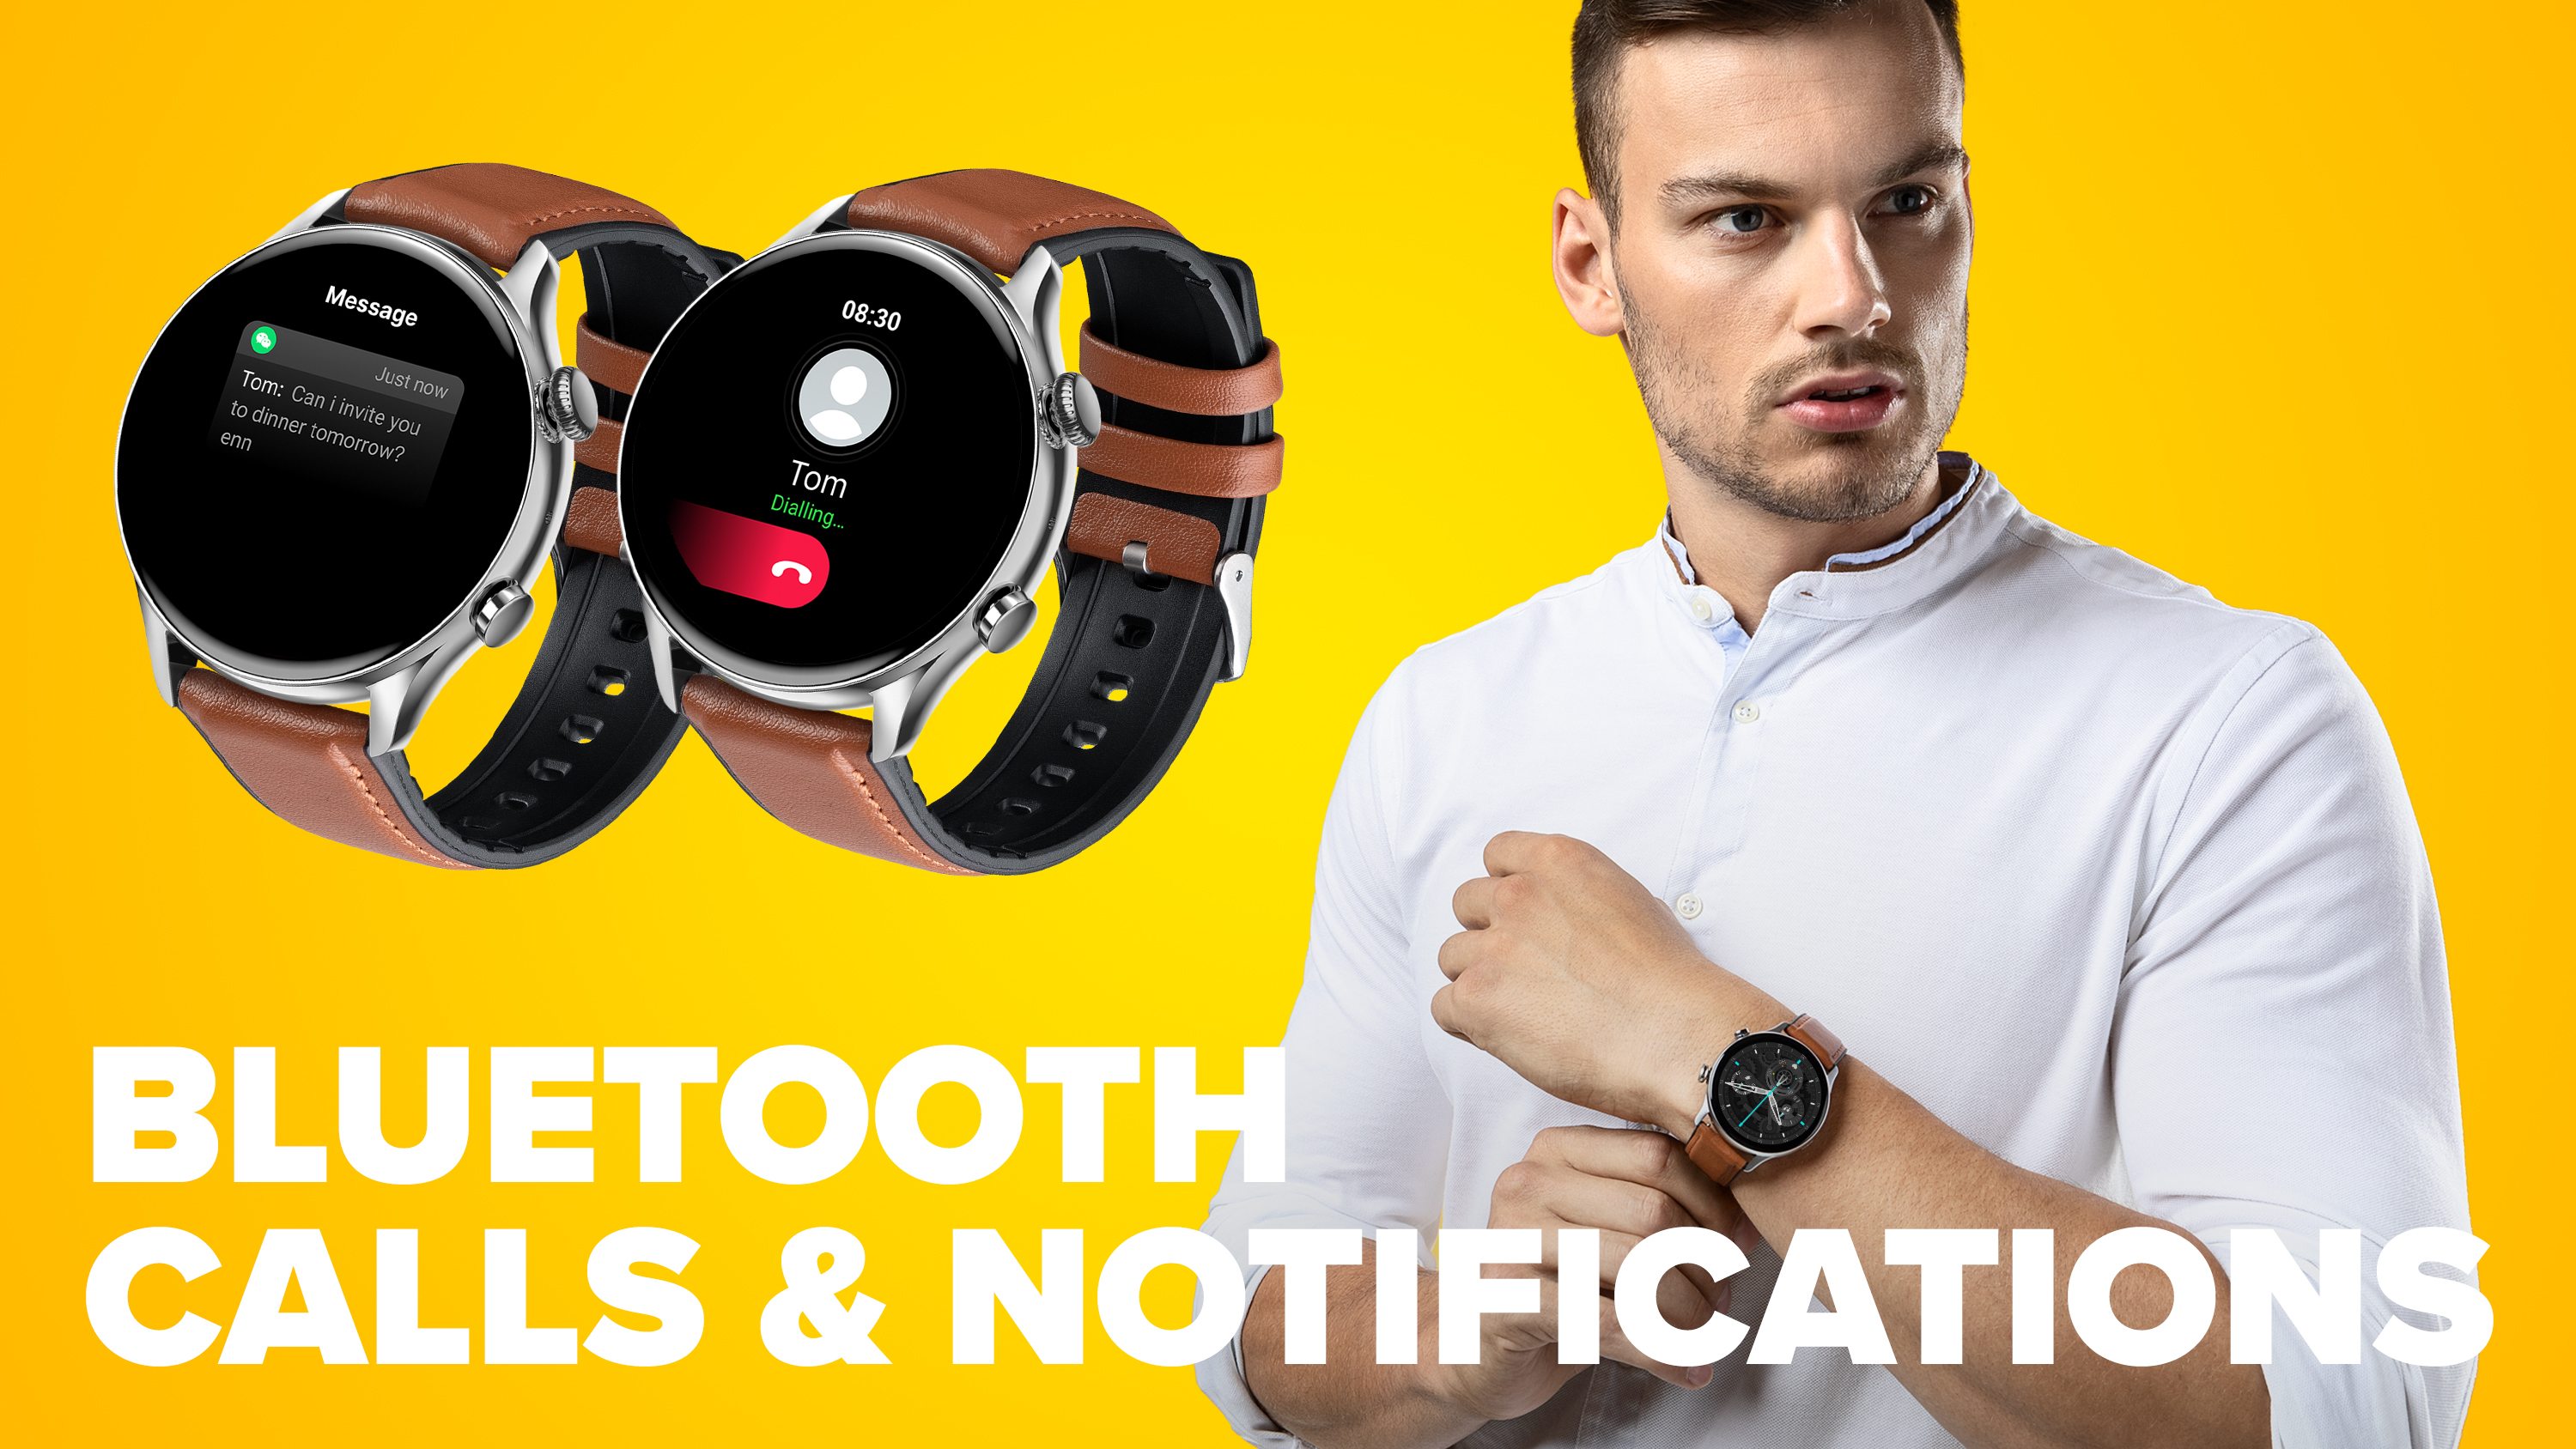 Chytré hodinky Niceboy WATCH GTR jsou vybaveny reproduktorem a mikrofonem pro vyřizování telefonních hovorů přímo z vašeho zápěstí.